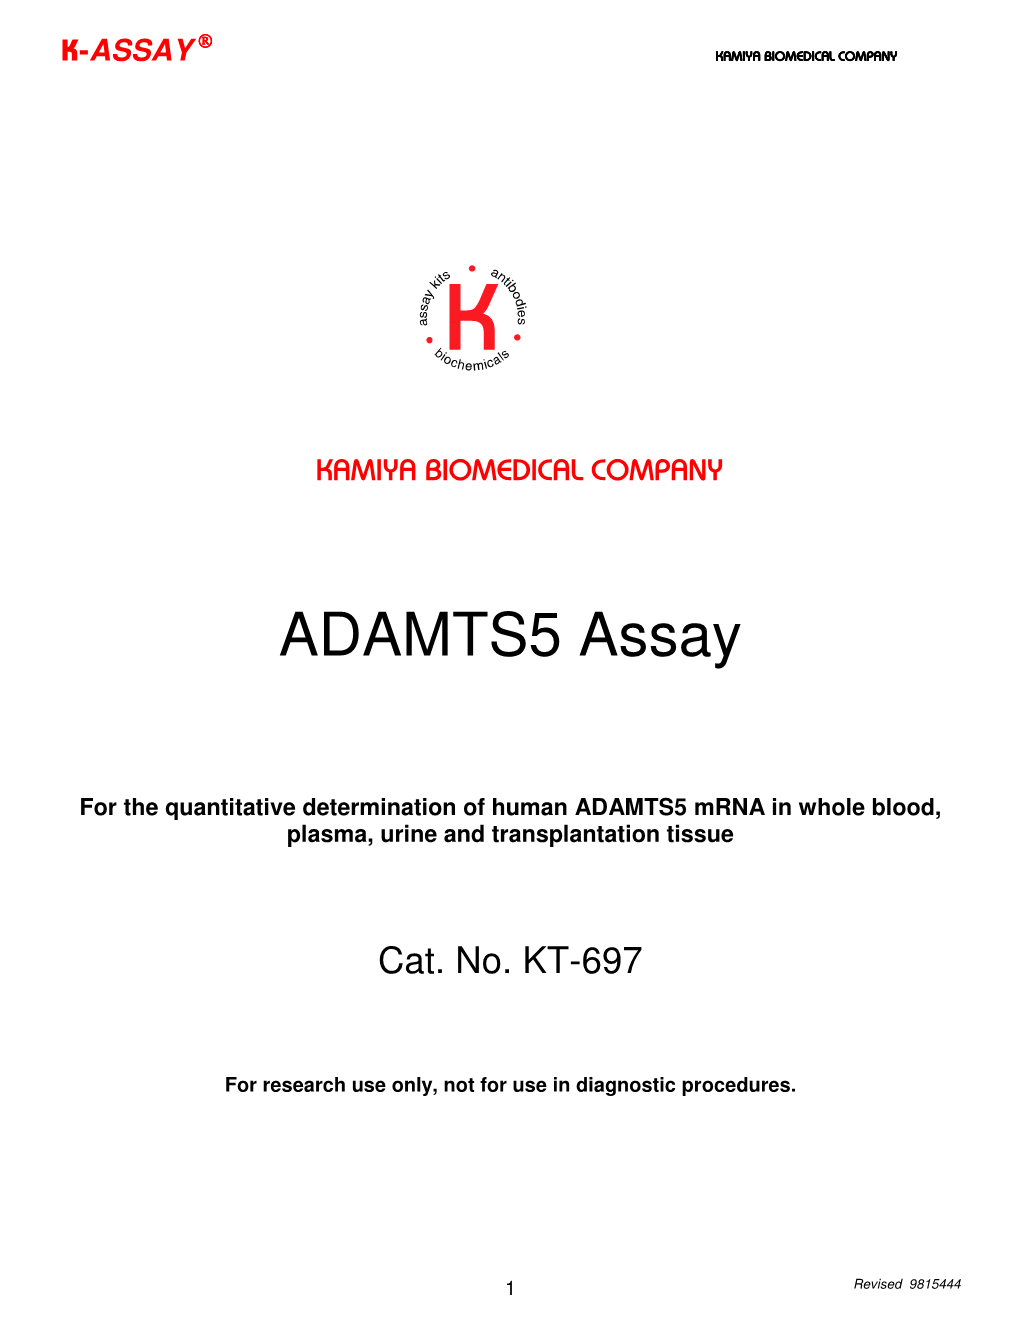 ADAMTS5 Assay, Human